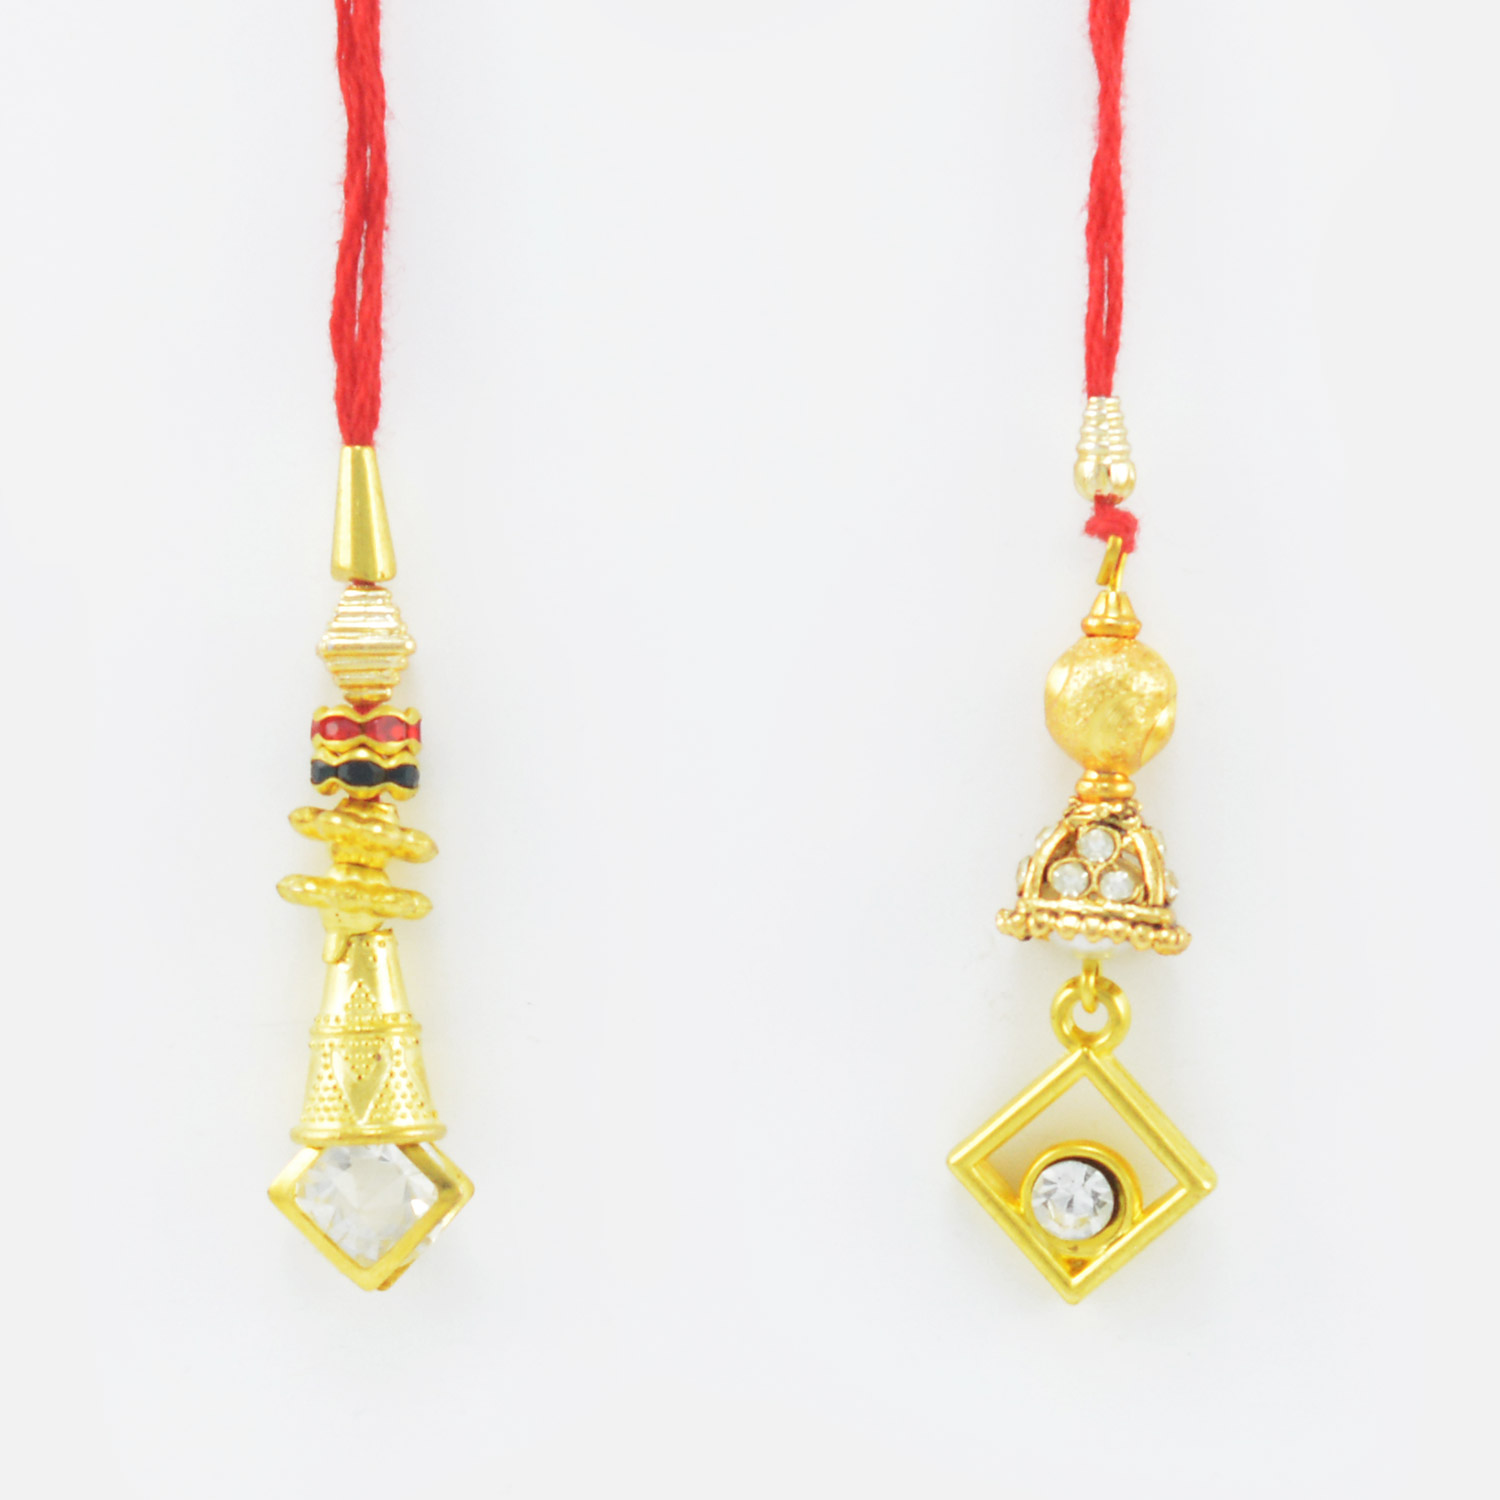 Two Diamond Studded Rakhi Set of 2 Lumba Rakhis